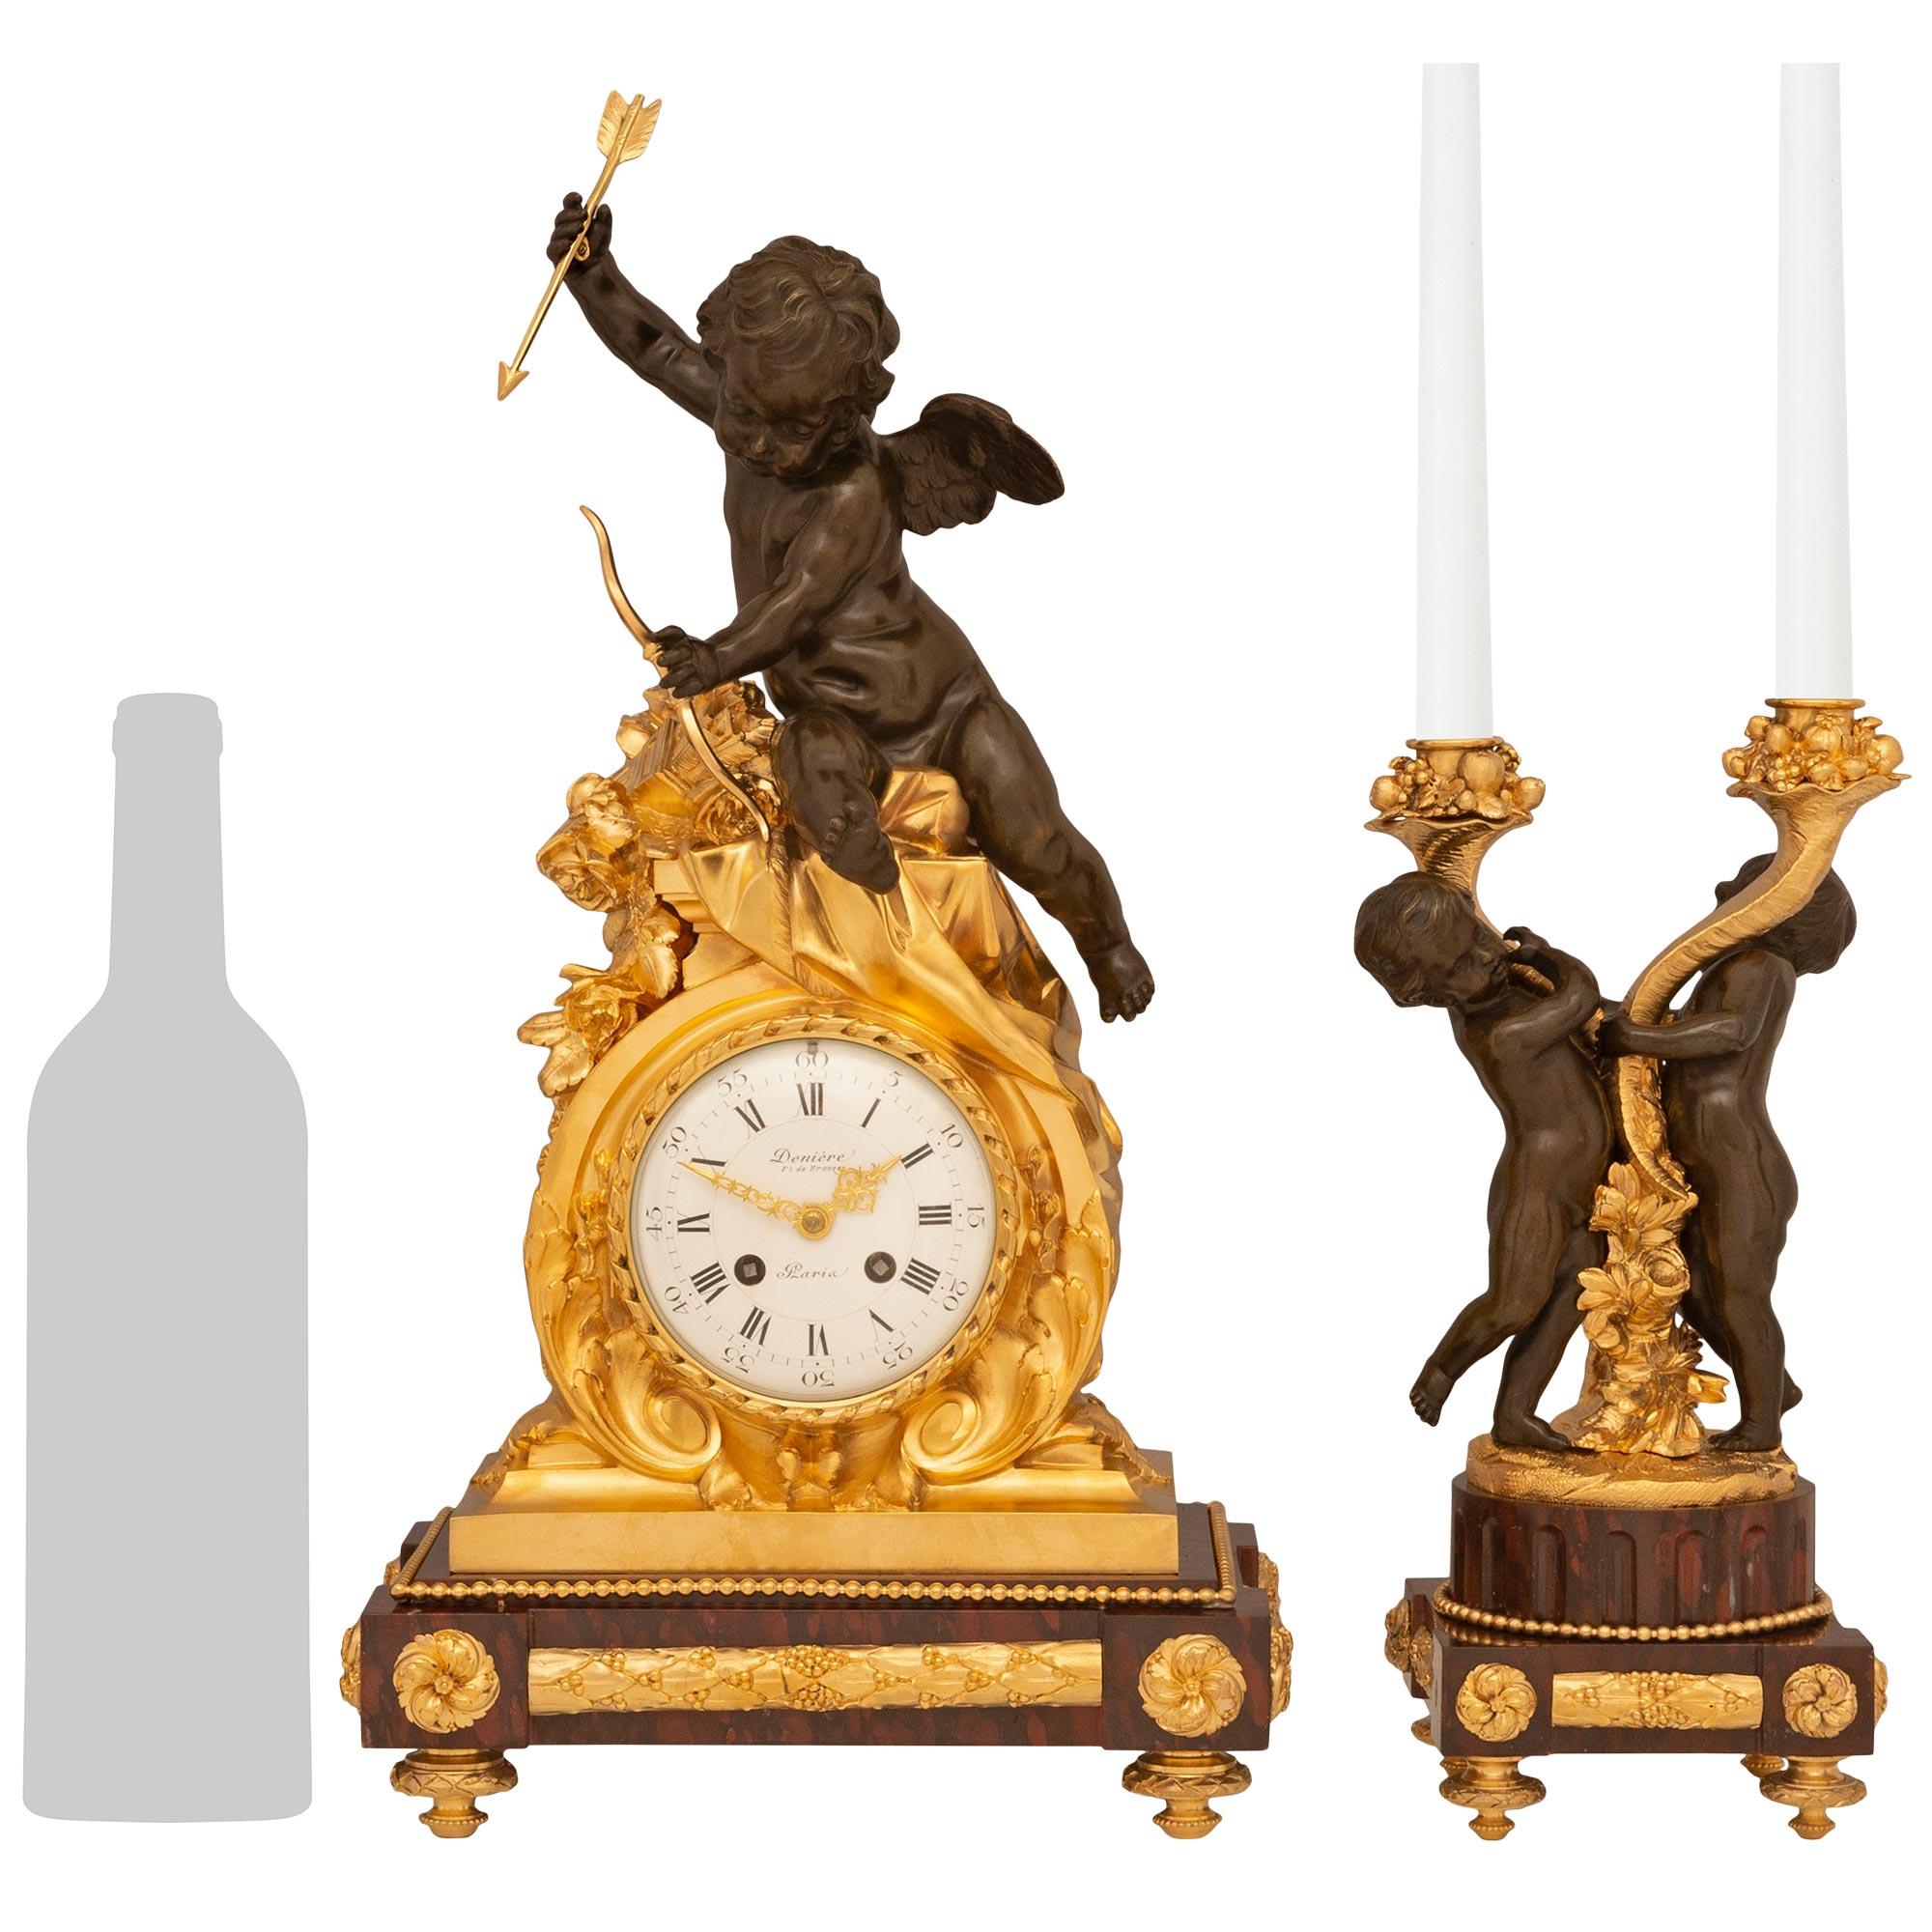 Un sensationnel ensemble de trois pièces de garniture de haute qualité, signé Denière, Paris, de style Louis XVI du 19e siècle. L'élégant ensemble comprend une paire de candélabres à deux bras reposant sur des socles carrés en marbre Rouge Griotte